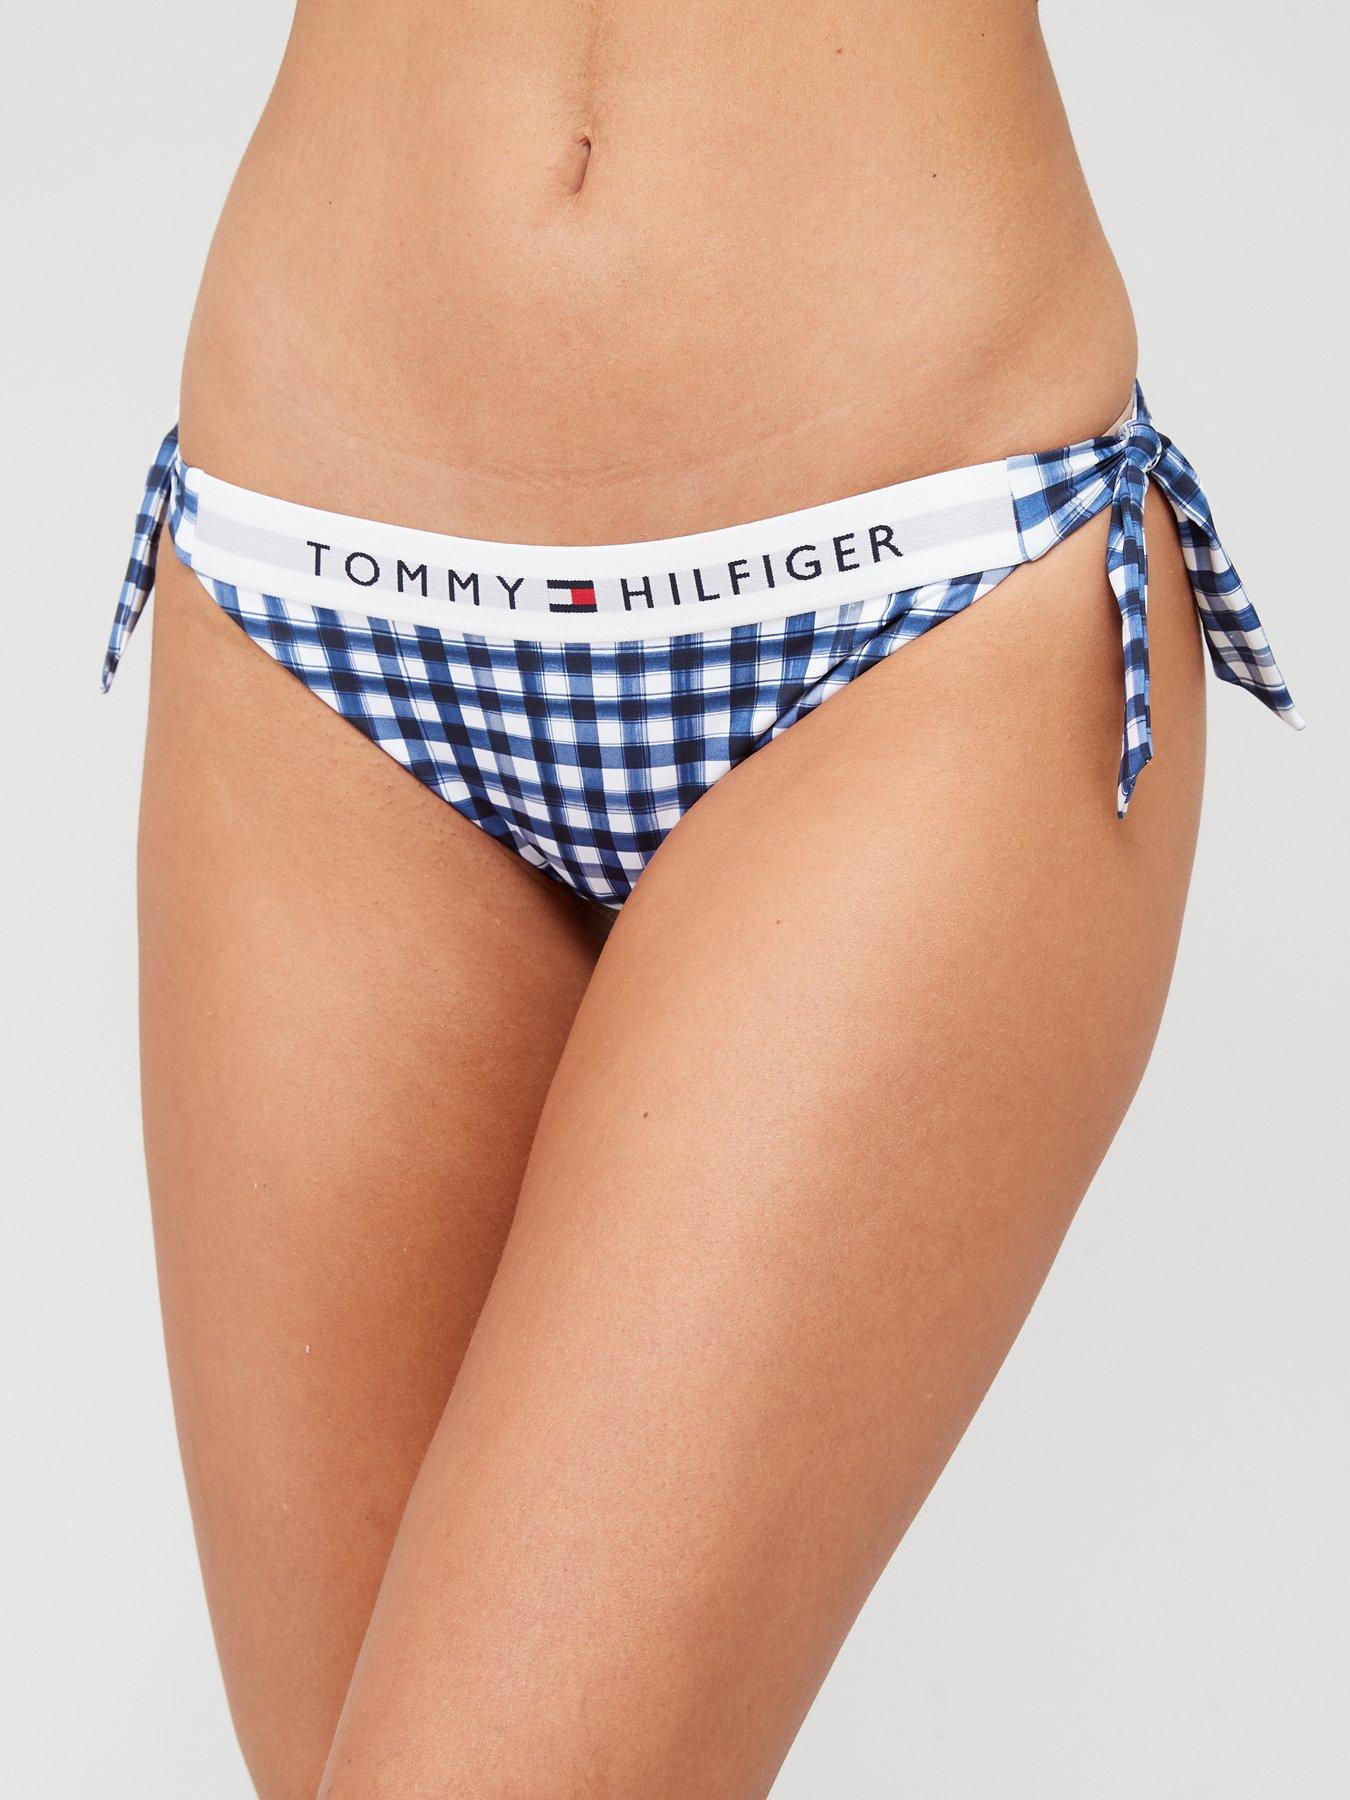 Authentic Sexy Tommy Hilfiger Ladies Sky Blue G-String Underwear Size:  Medium 